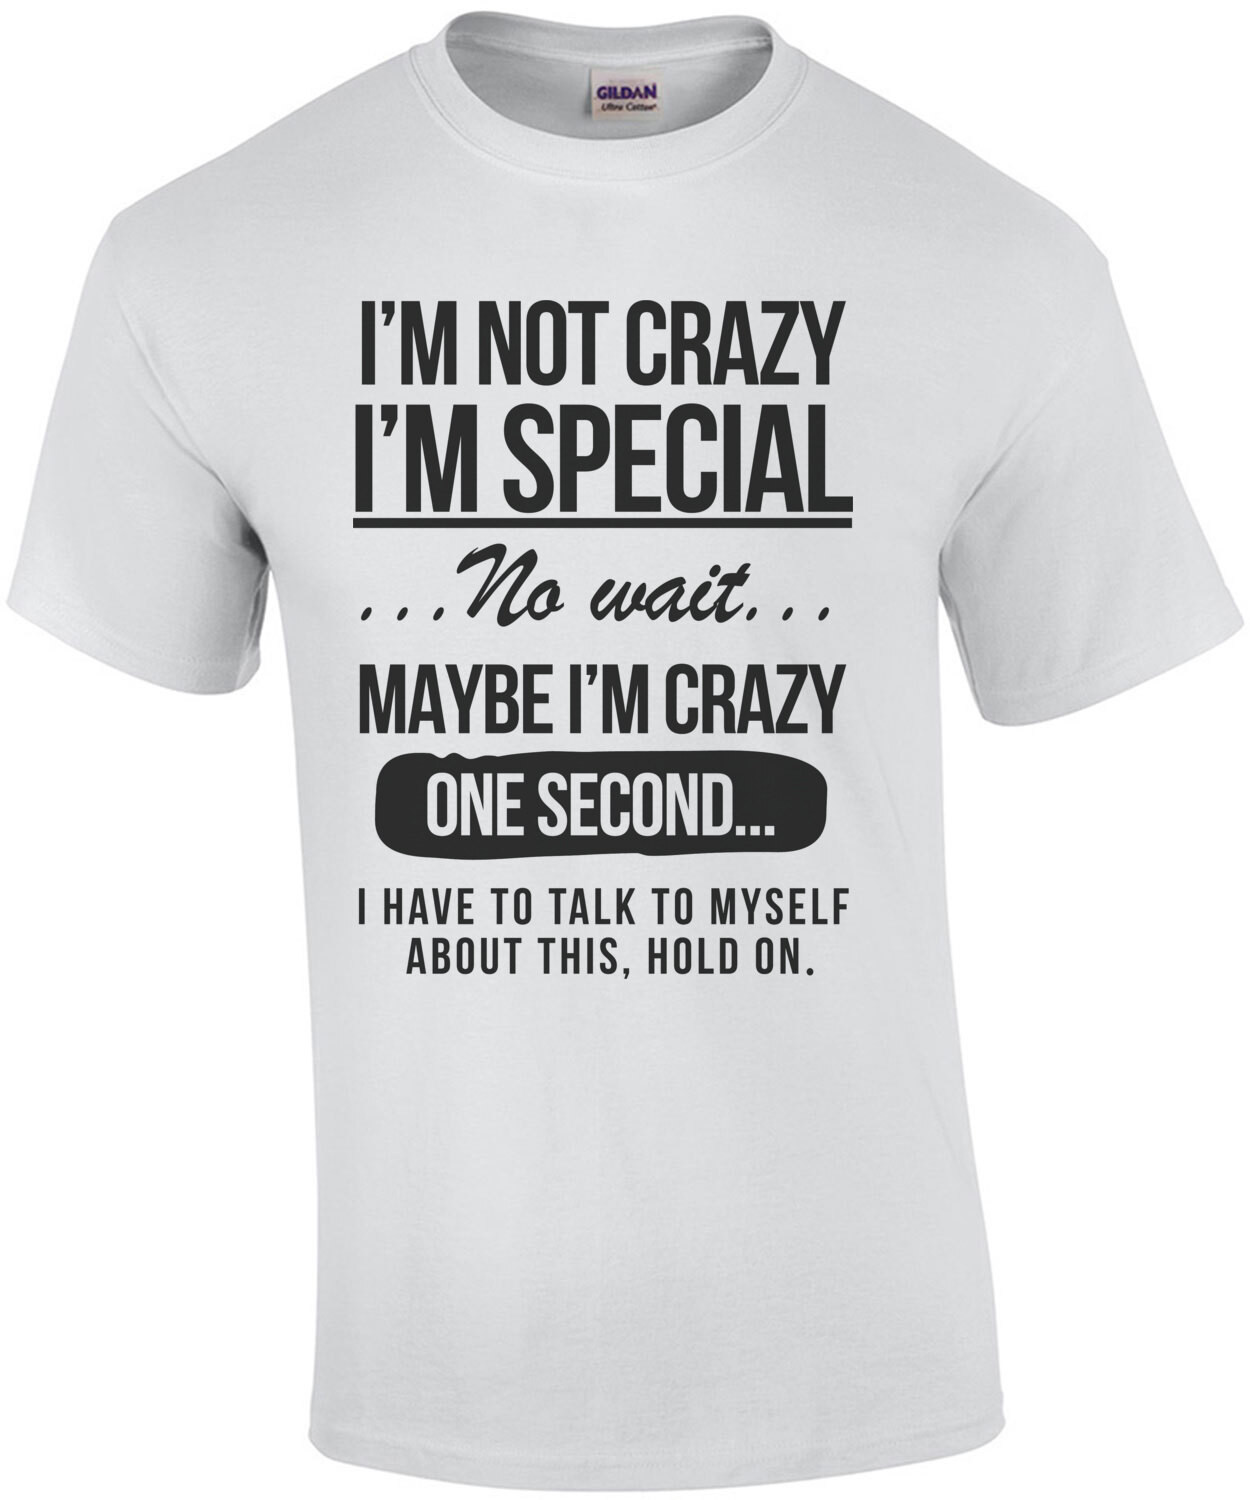 I'm not crazy - I'm special - No wait - Funny T-Shirt